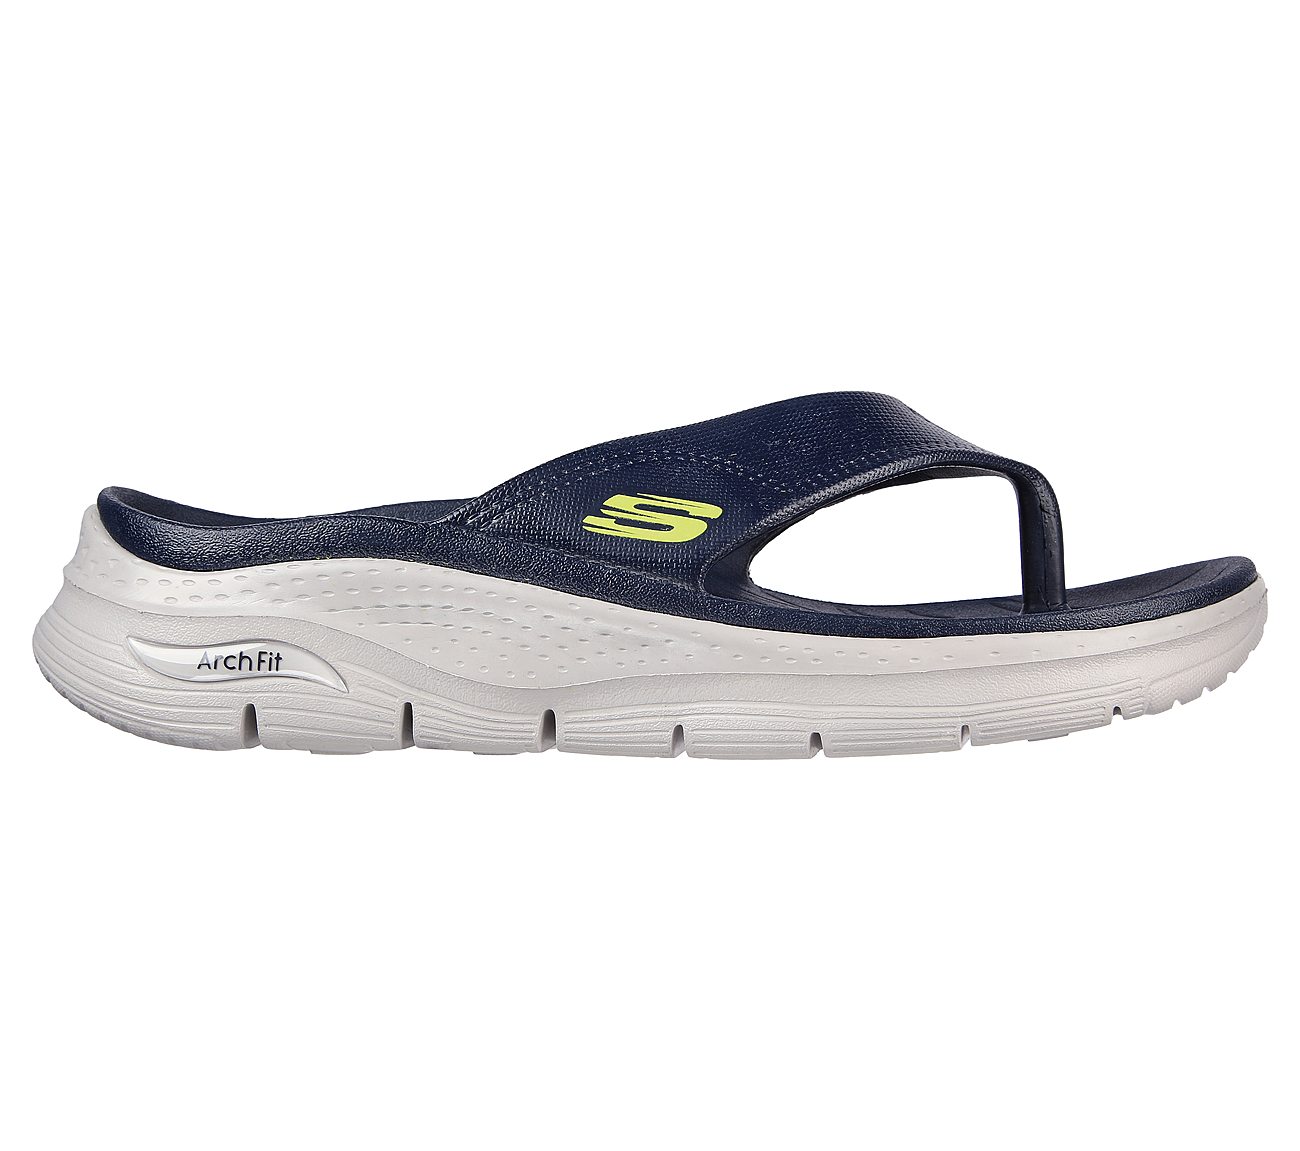 Buy Black Sports Sandals for Women by Skechers Online  Ajiocom